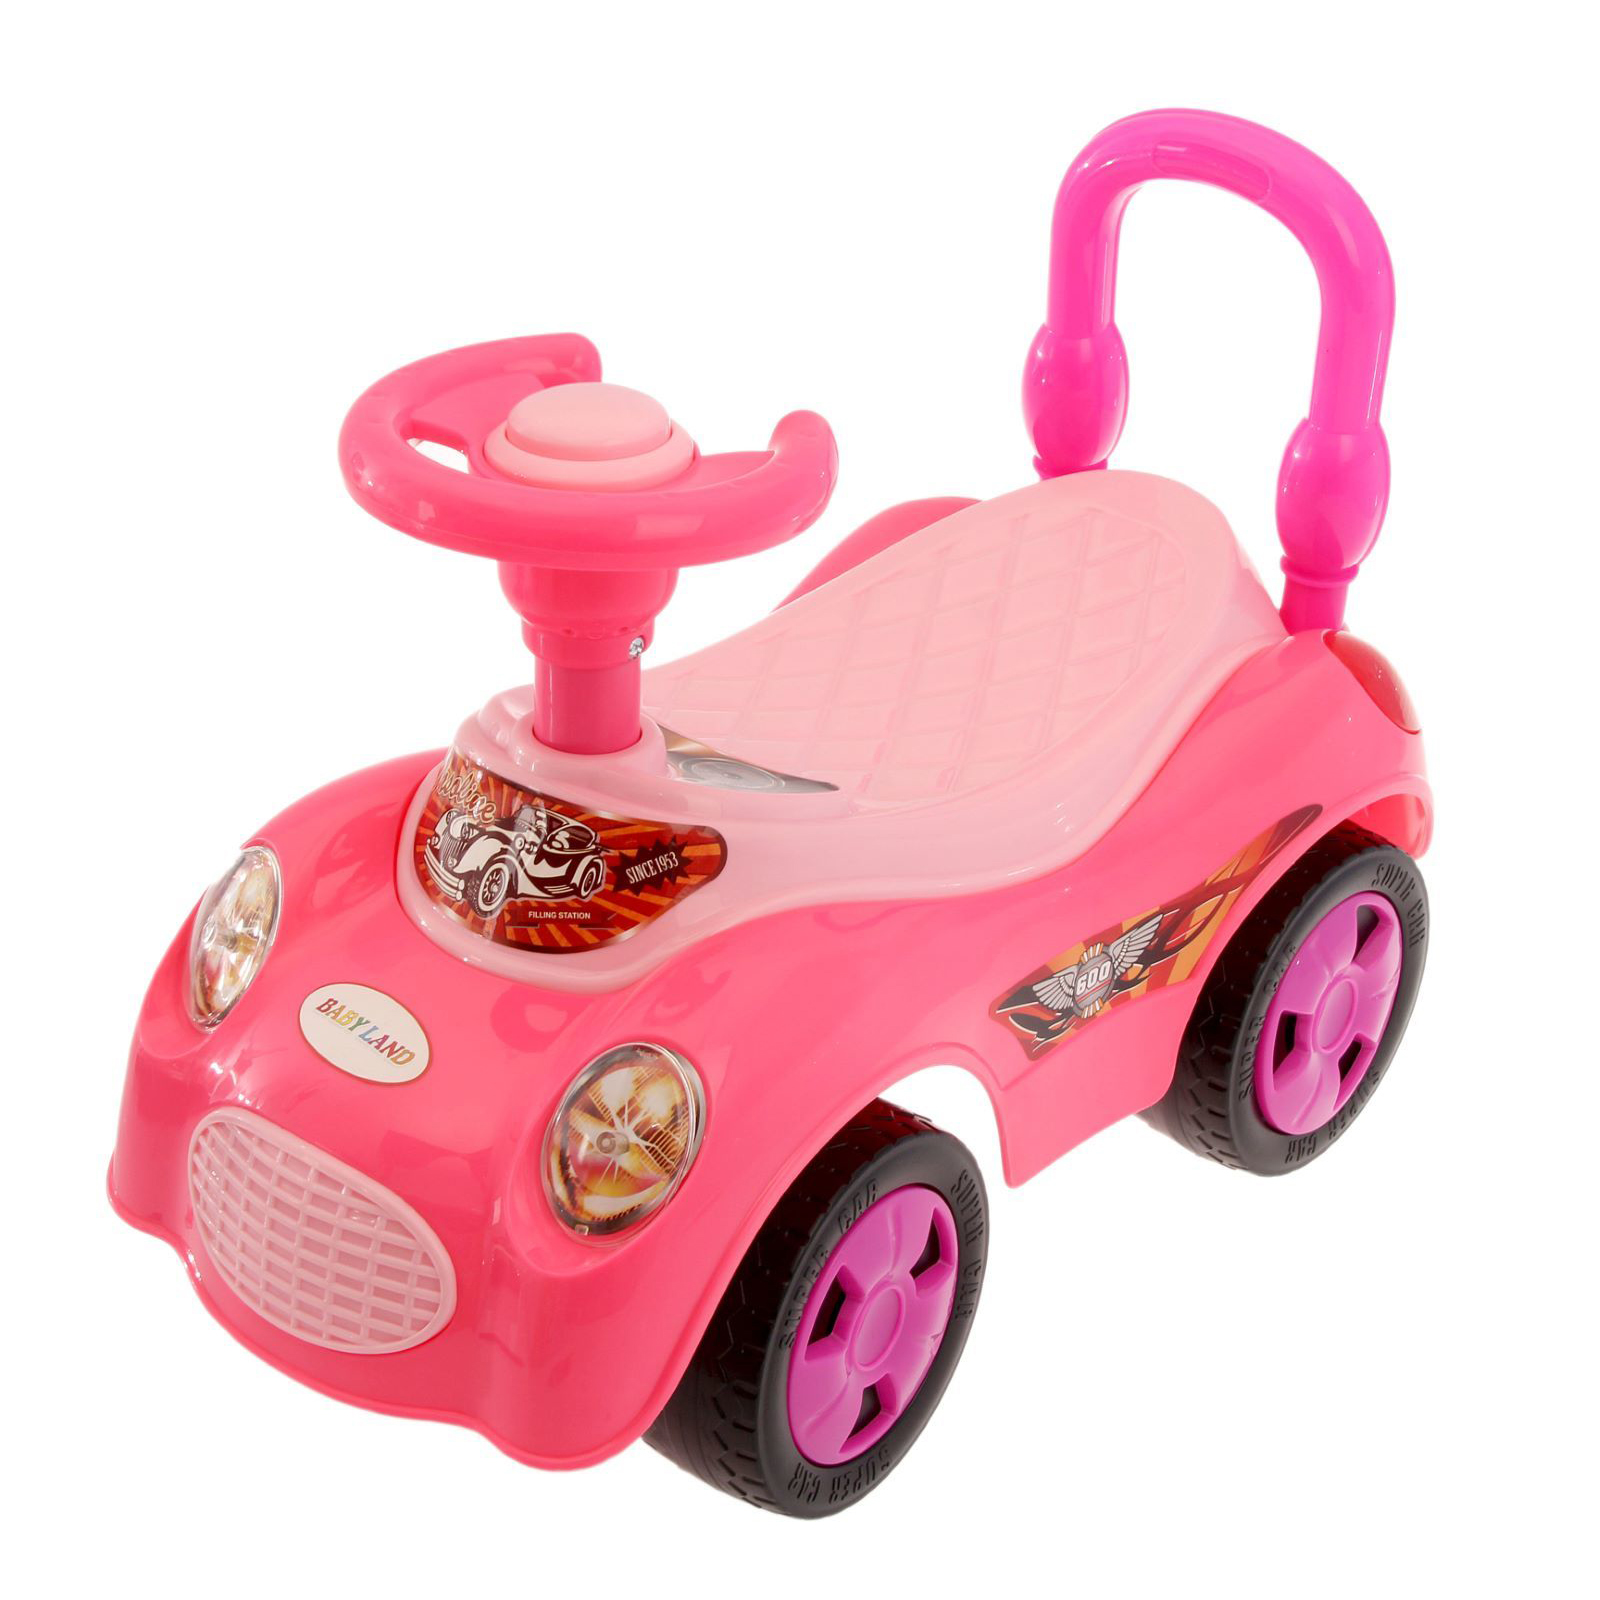 Толокары от 1 года. Каталка-толокар Injusa Disney Princess. Машинки каталки для девочек принцесса кабриолет. Каталка толокар для девочки 1 годик.